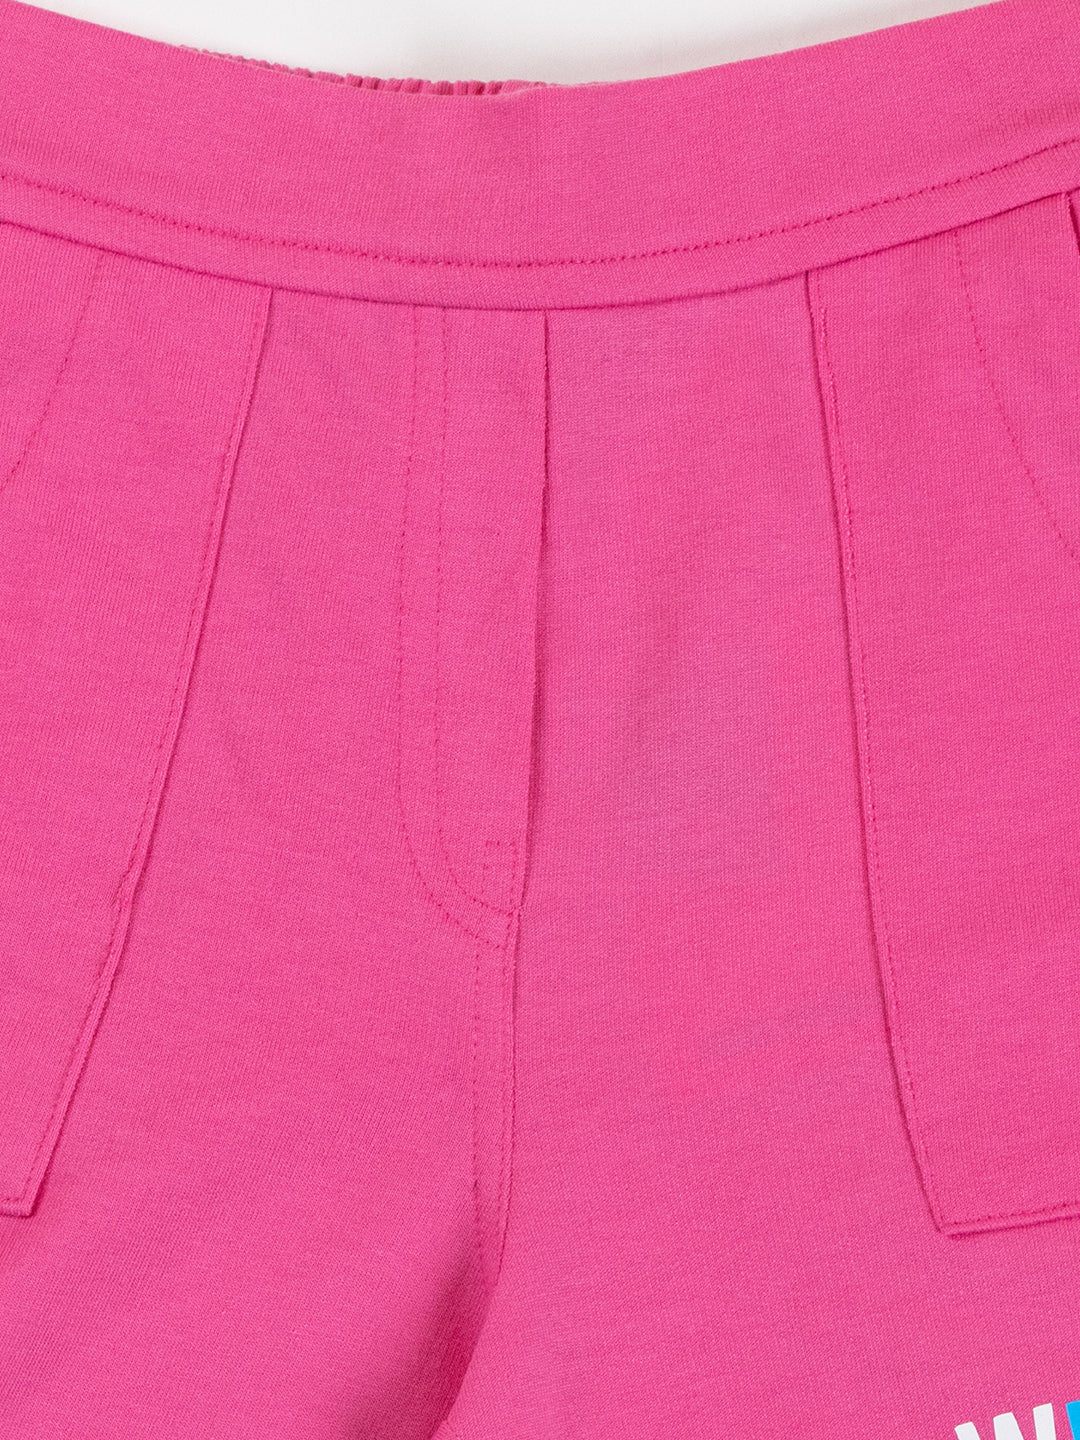 Pampolina Girls Solid Shorts-Pink